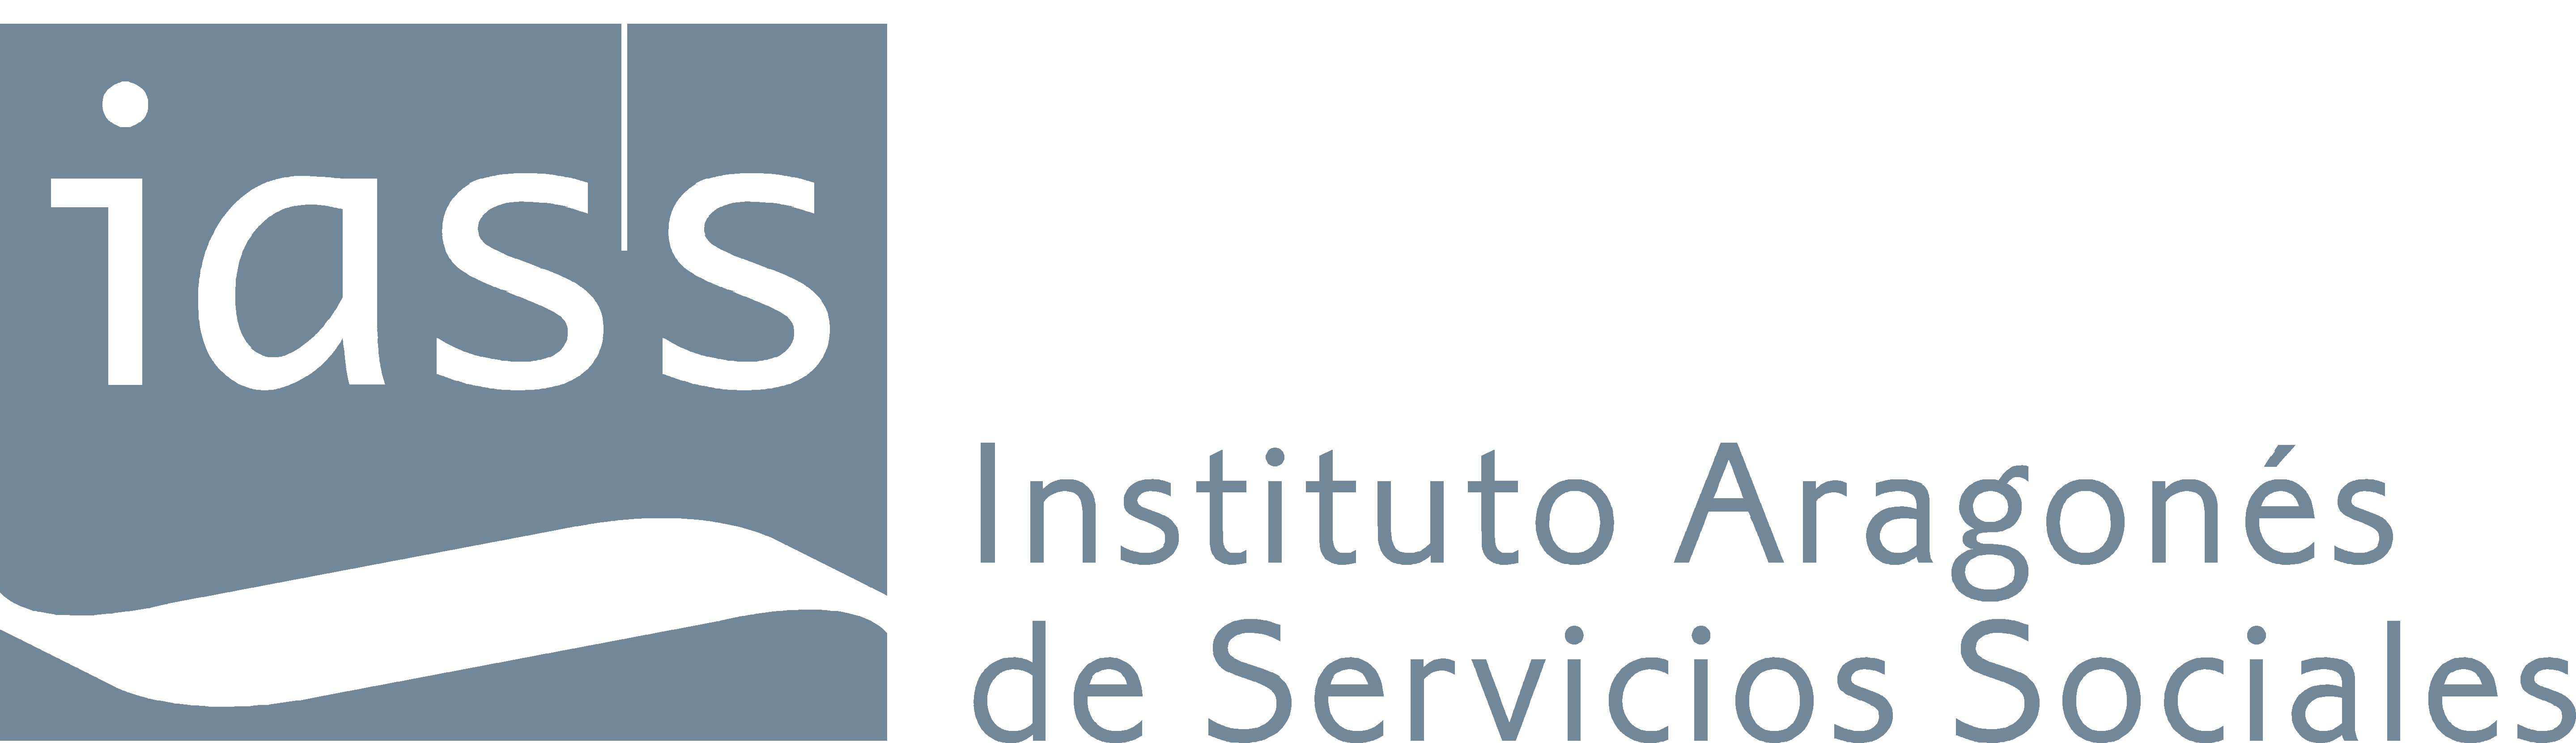 Logo del Instituto Aragonés de Servicios Sociales.